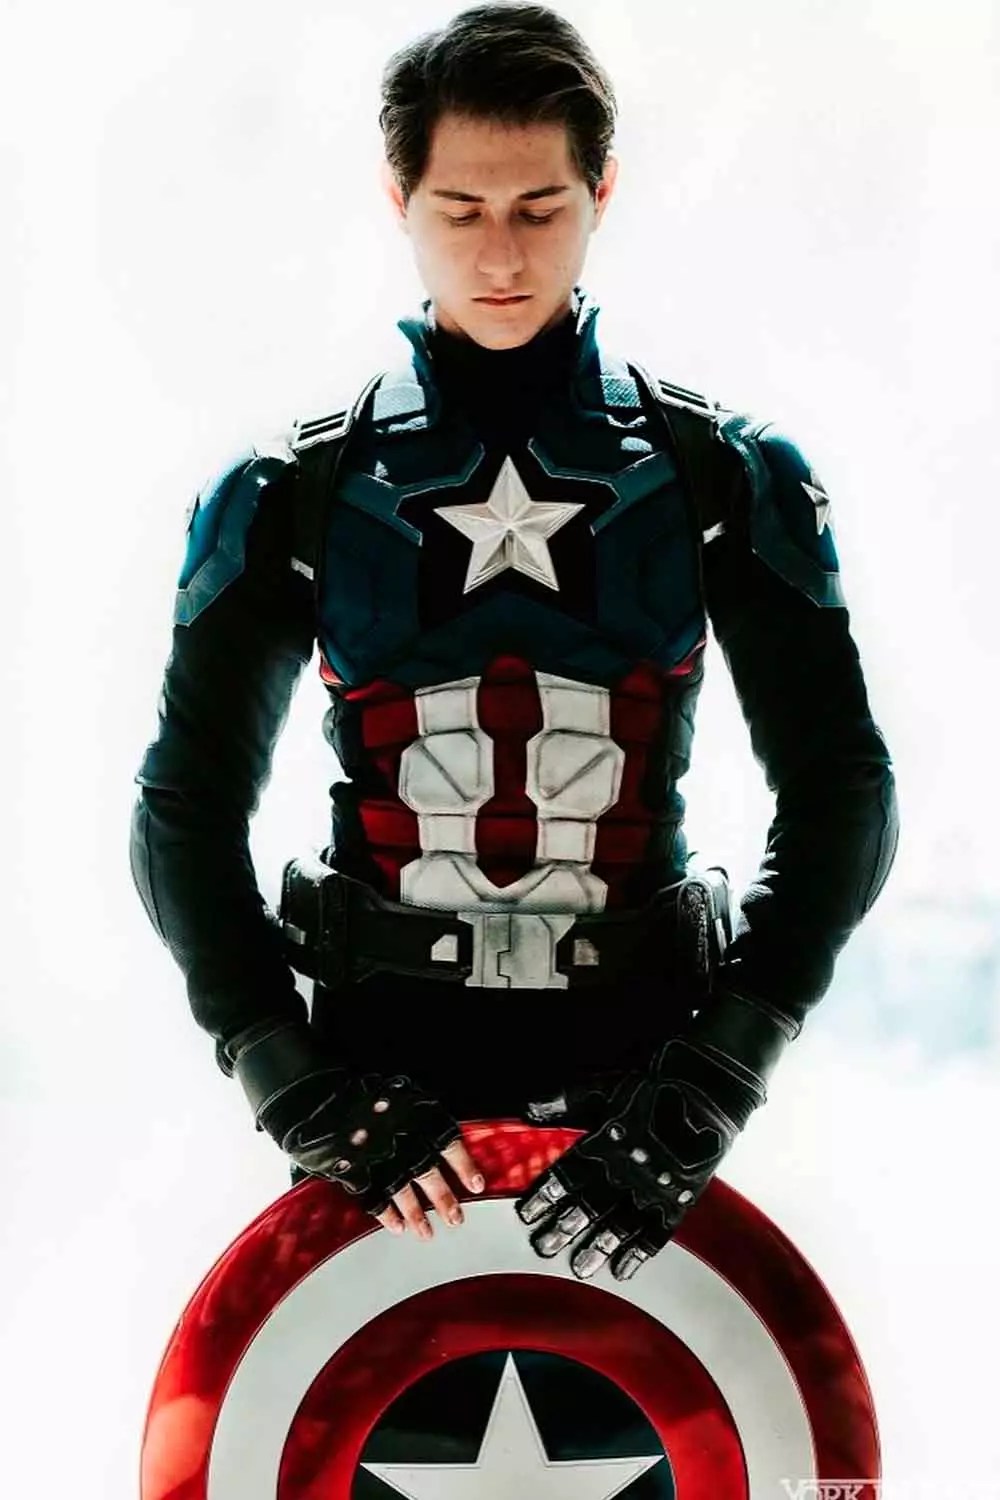 Captain America #menshalloweencostumes #haloweencostumeideasmen #halloweencostumes